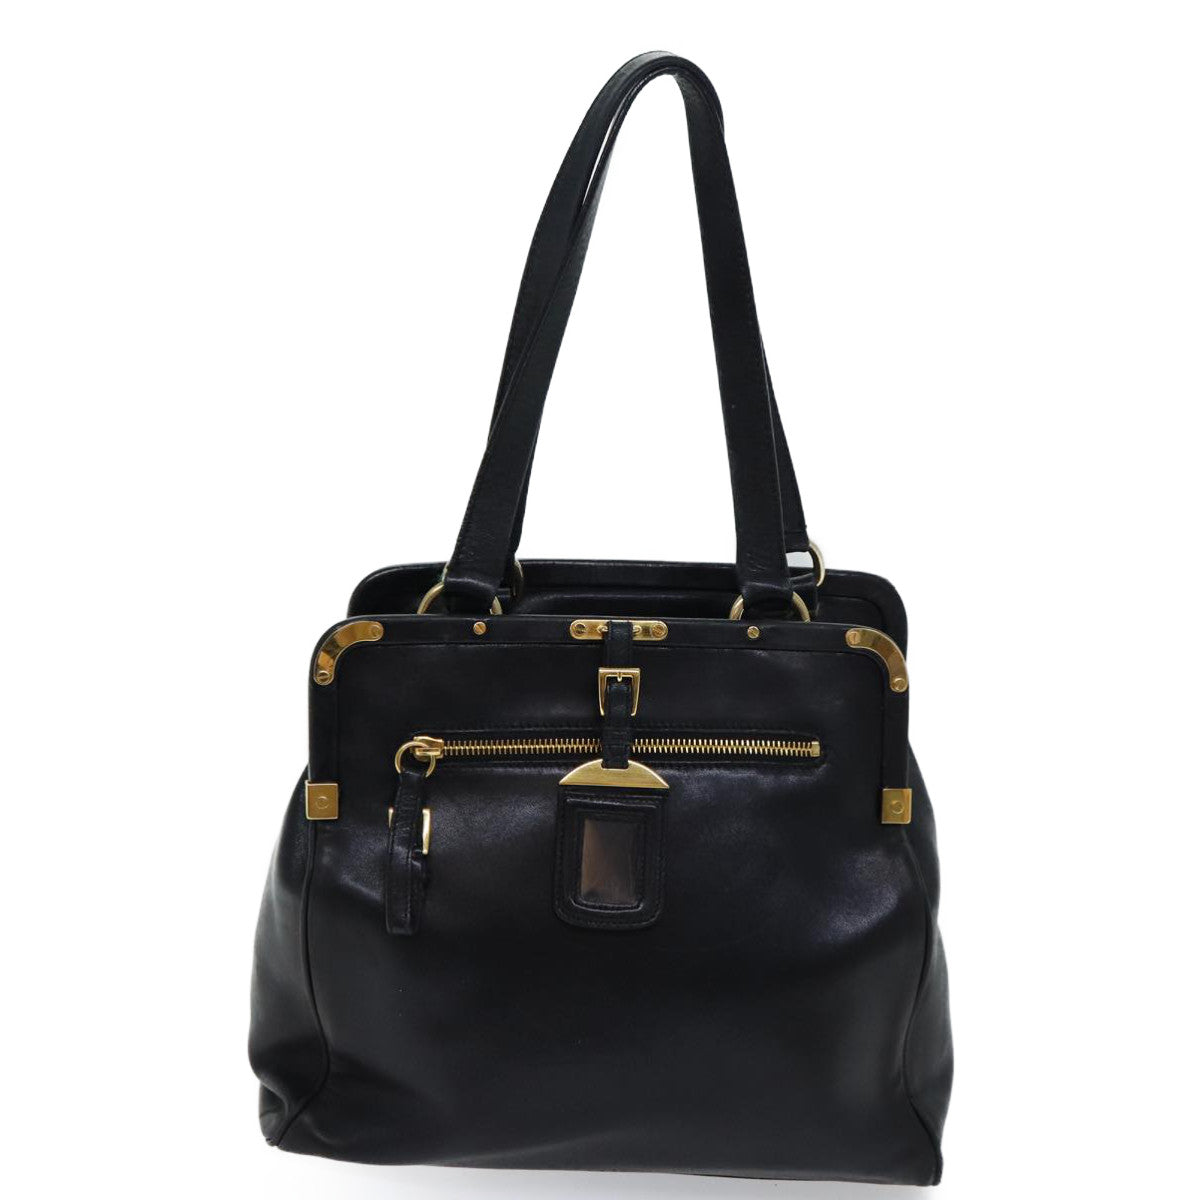 PRADA Tote Bag Leather Black Auth 71494 - 0